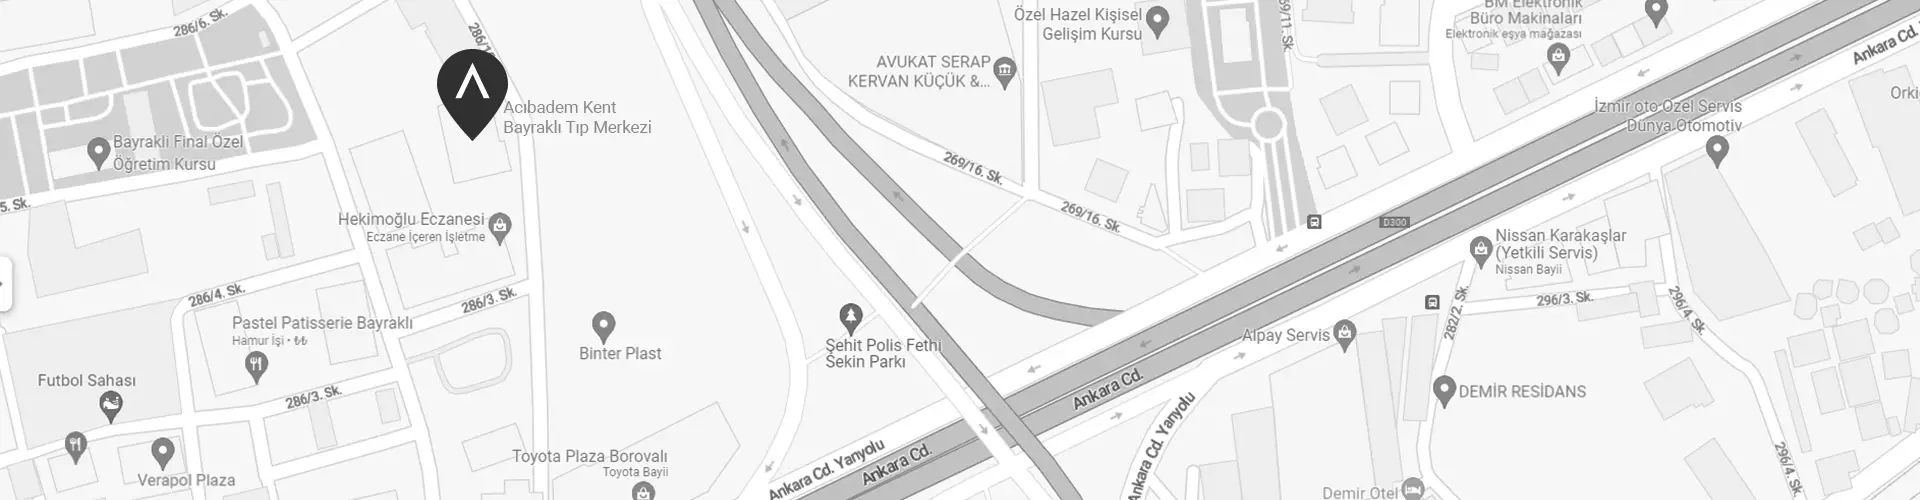 kent-bayrakli-medical-center-google-maps-image.webp